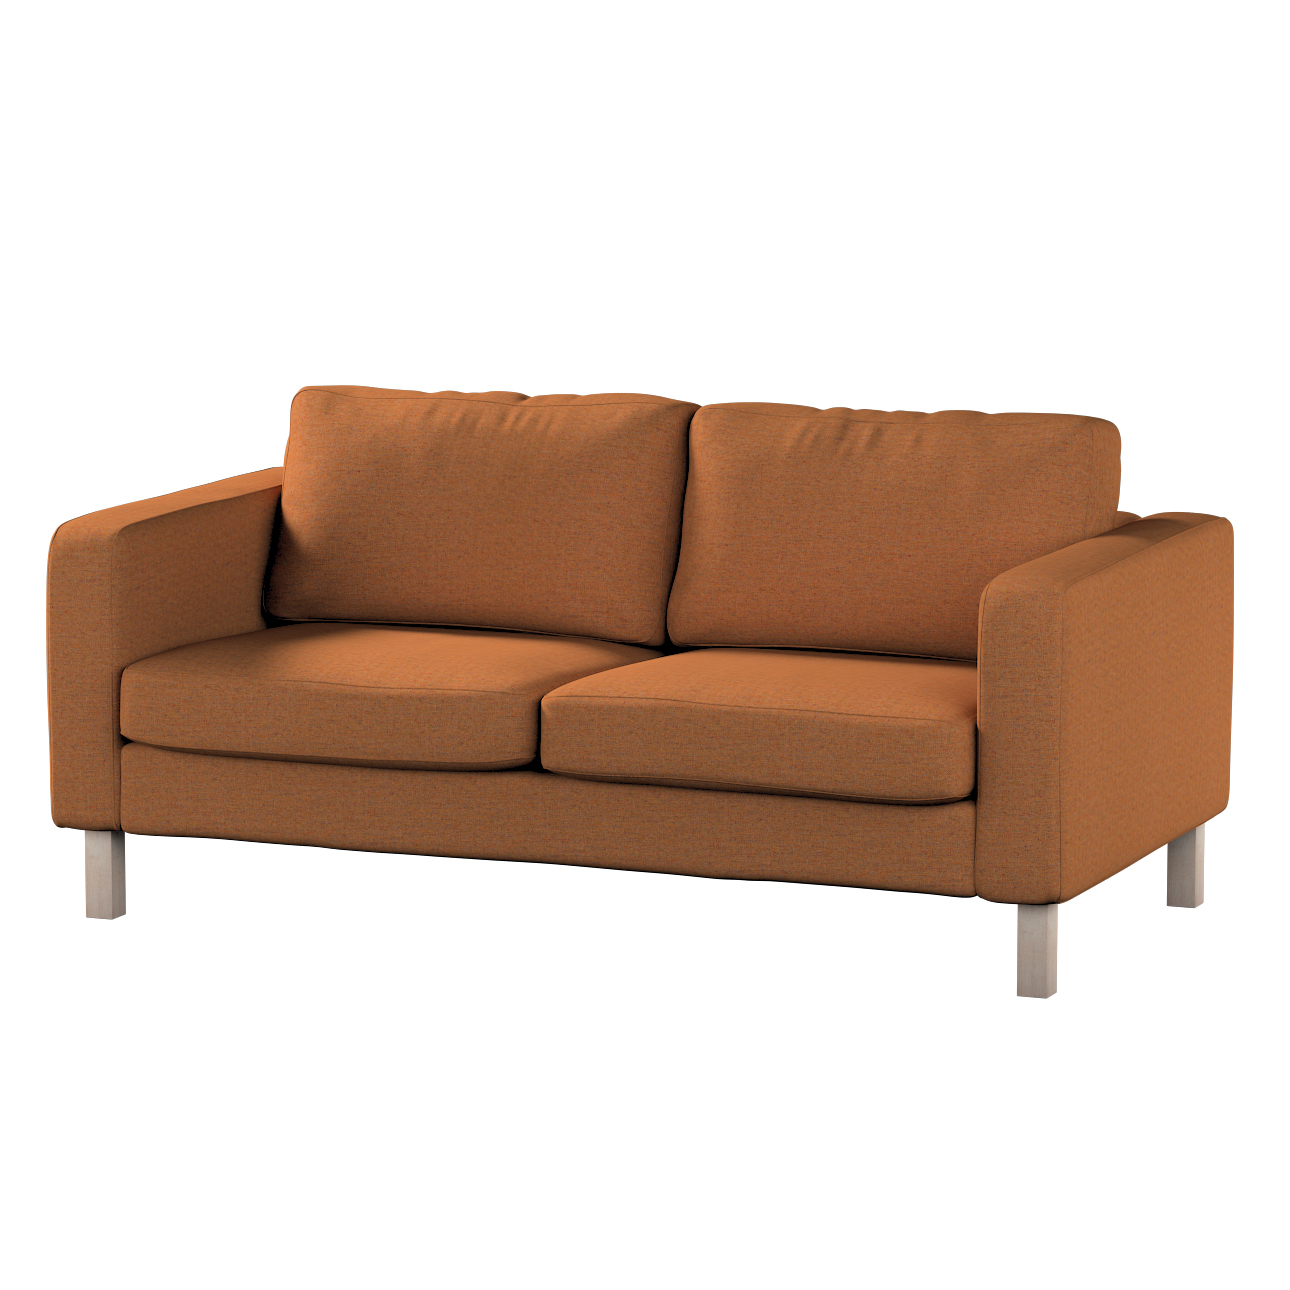 Bezug für Karlstad 2-Sitzer Sofa nicht ausklappbar, orange, Sofahusse, Karl günstig online kaufen